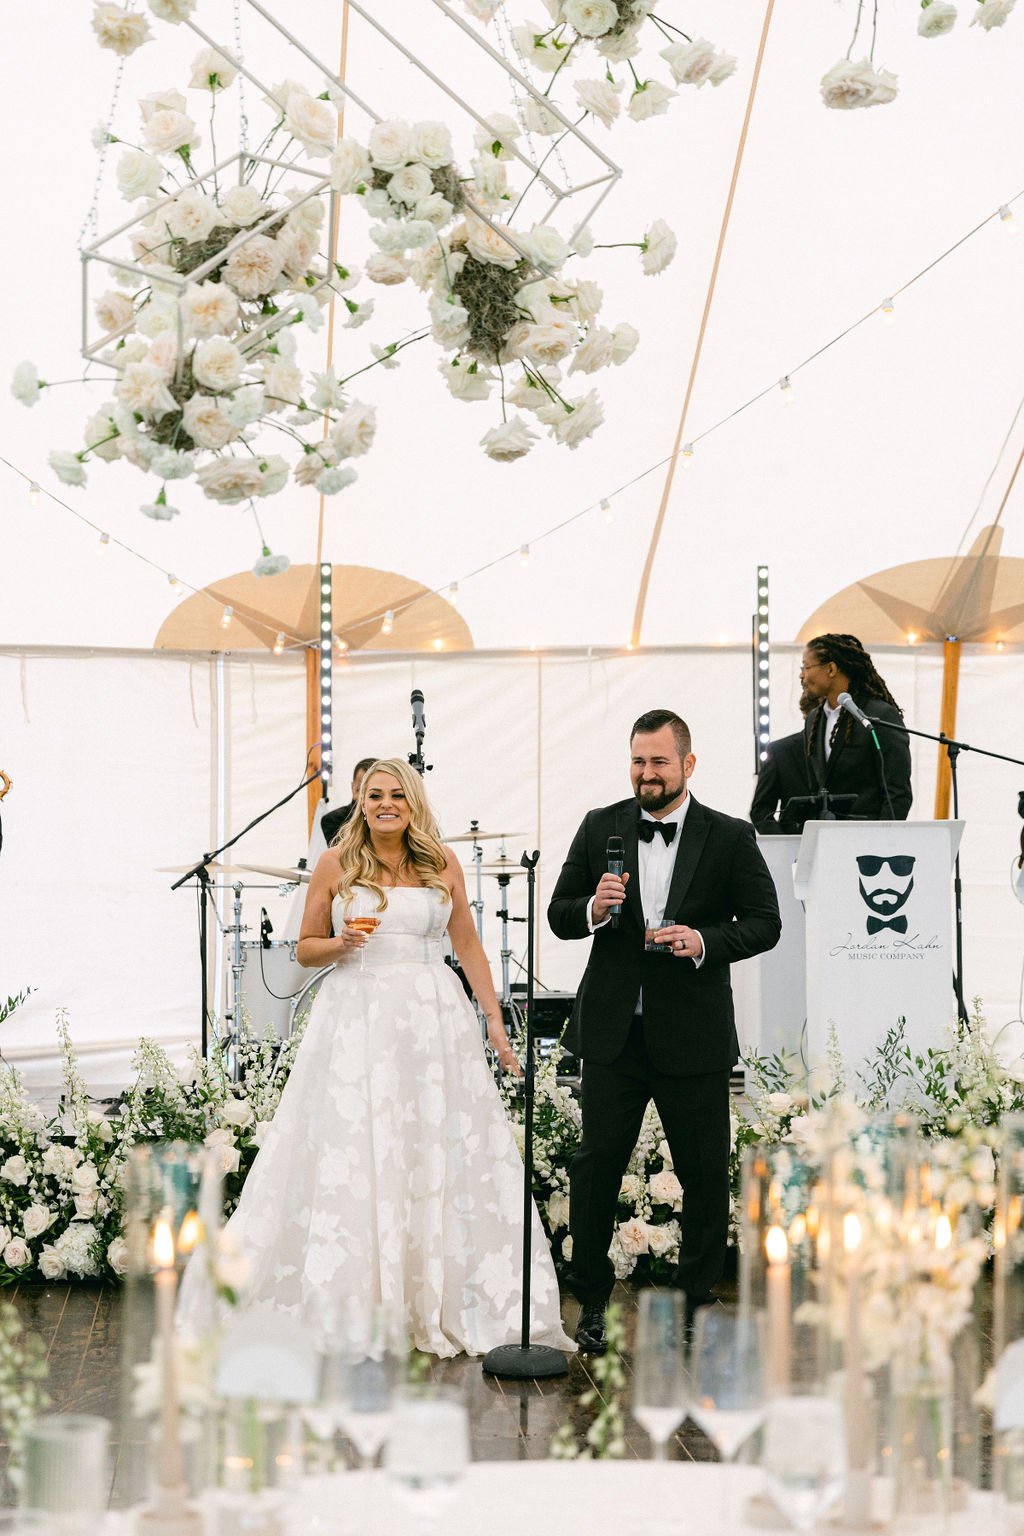  strapless aline gown tent reception outdoor wedding white florals  